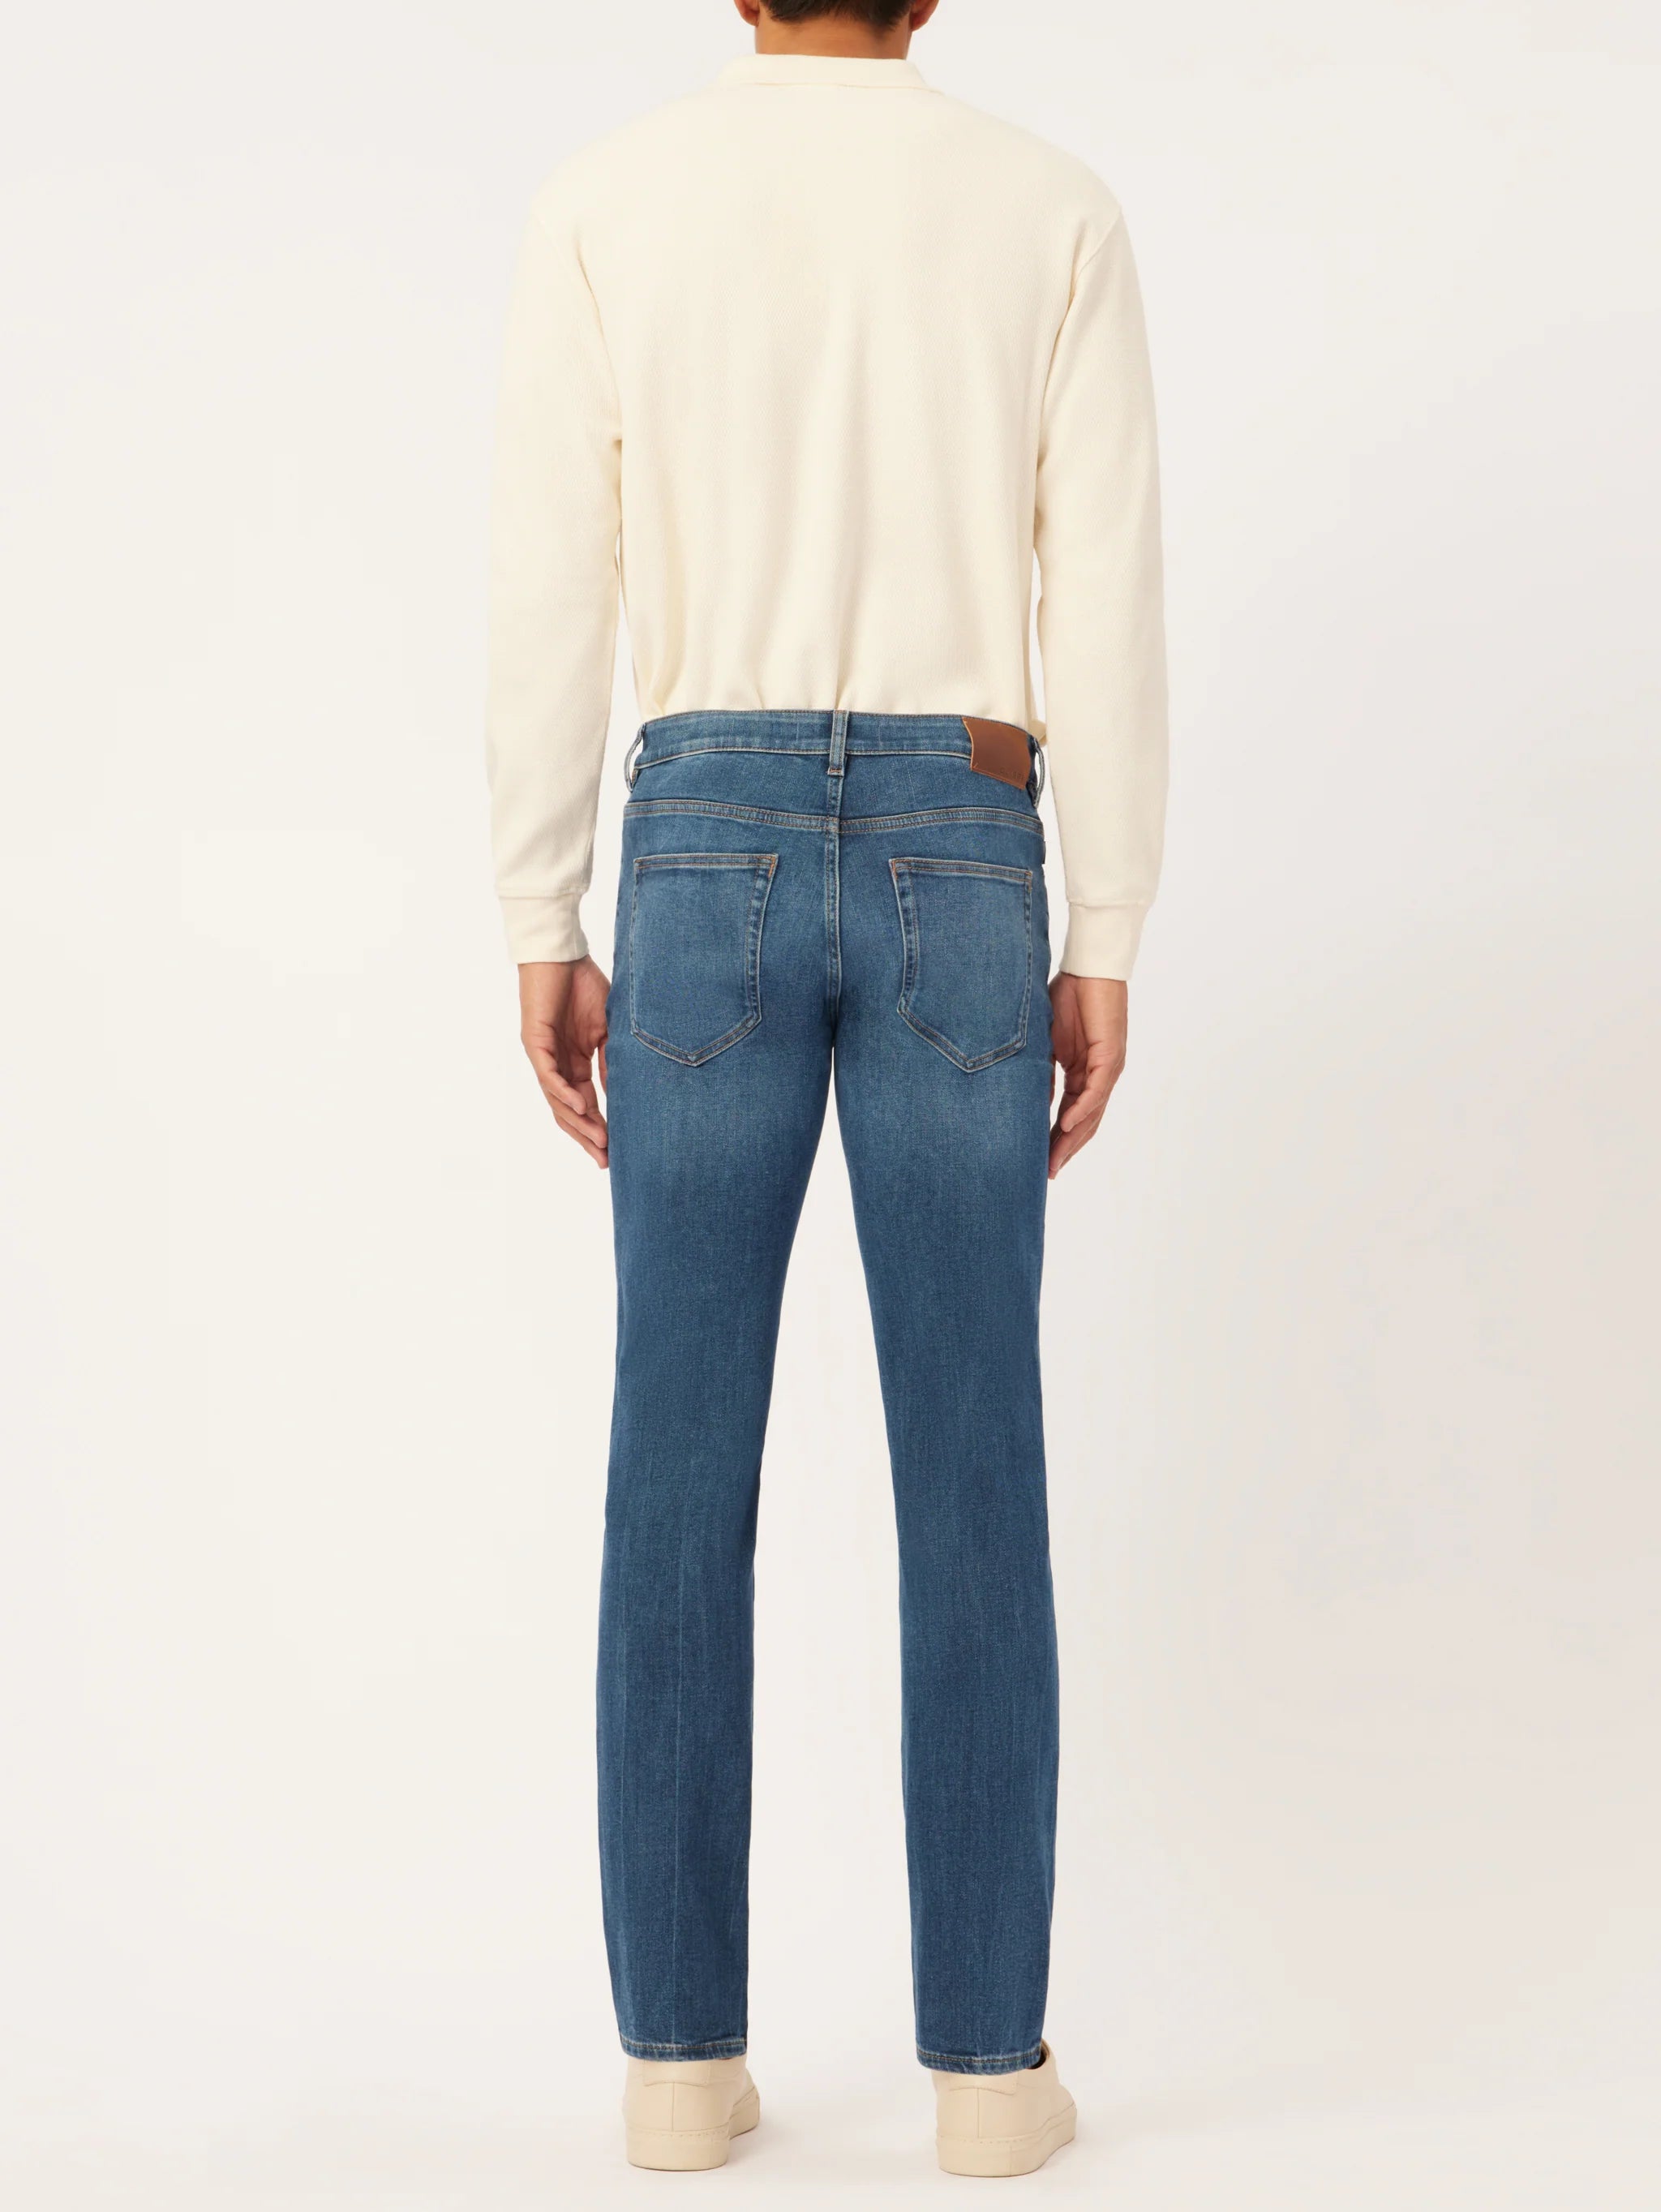 DL1961 Men's Nick Slim Jeans